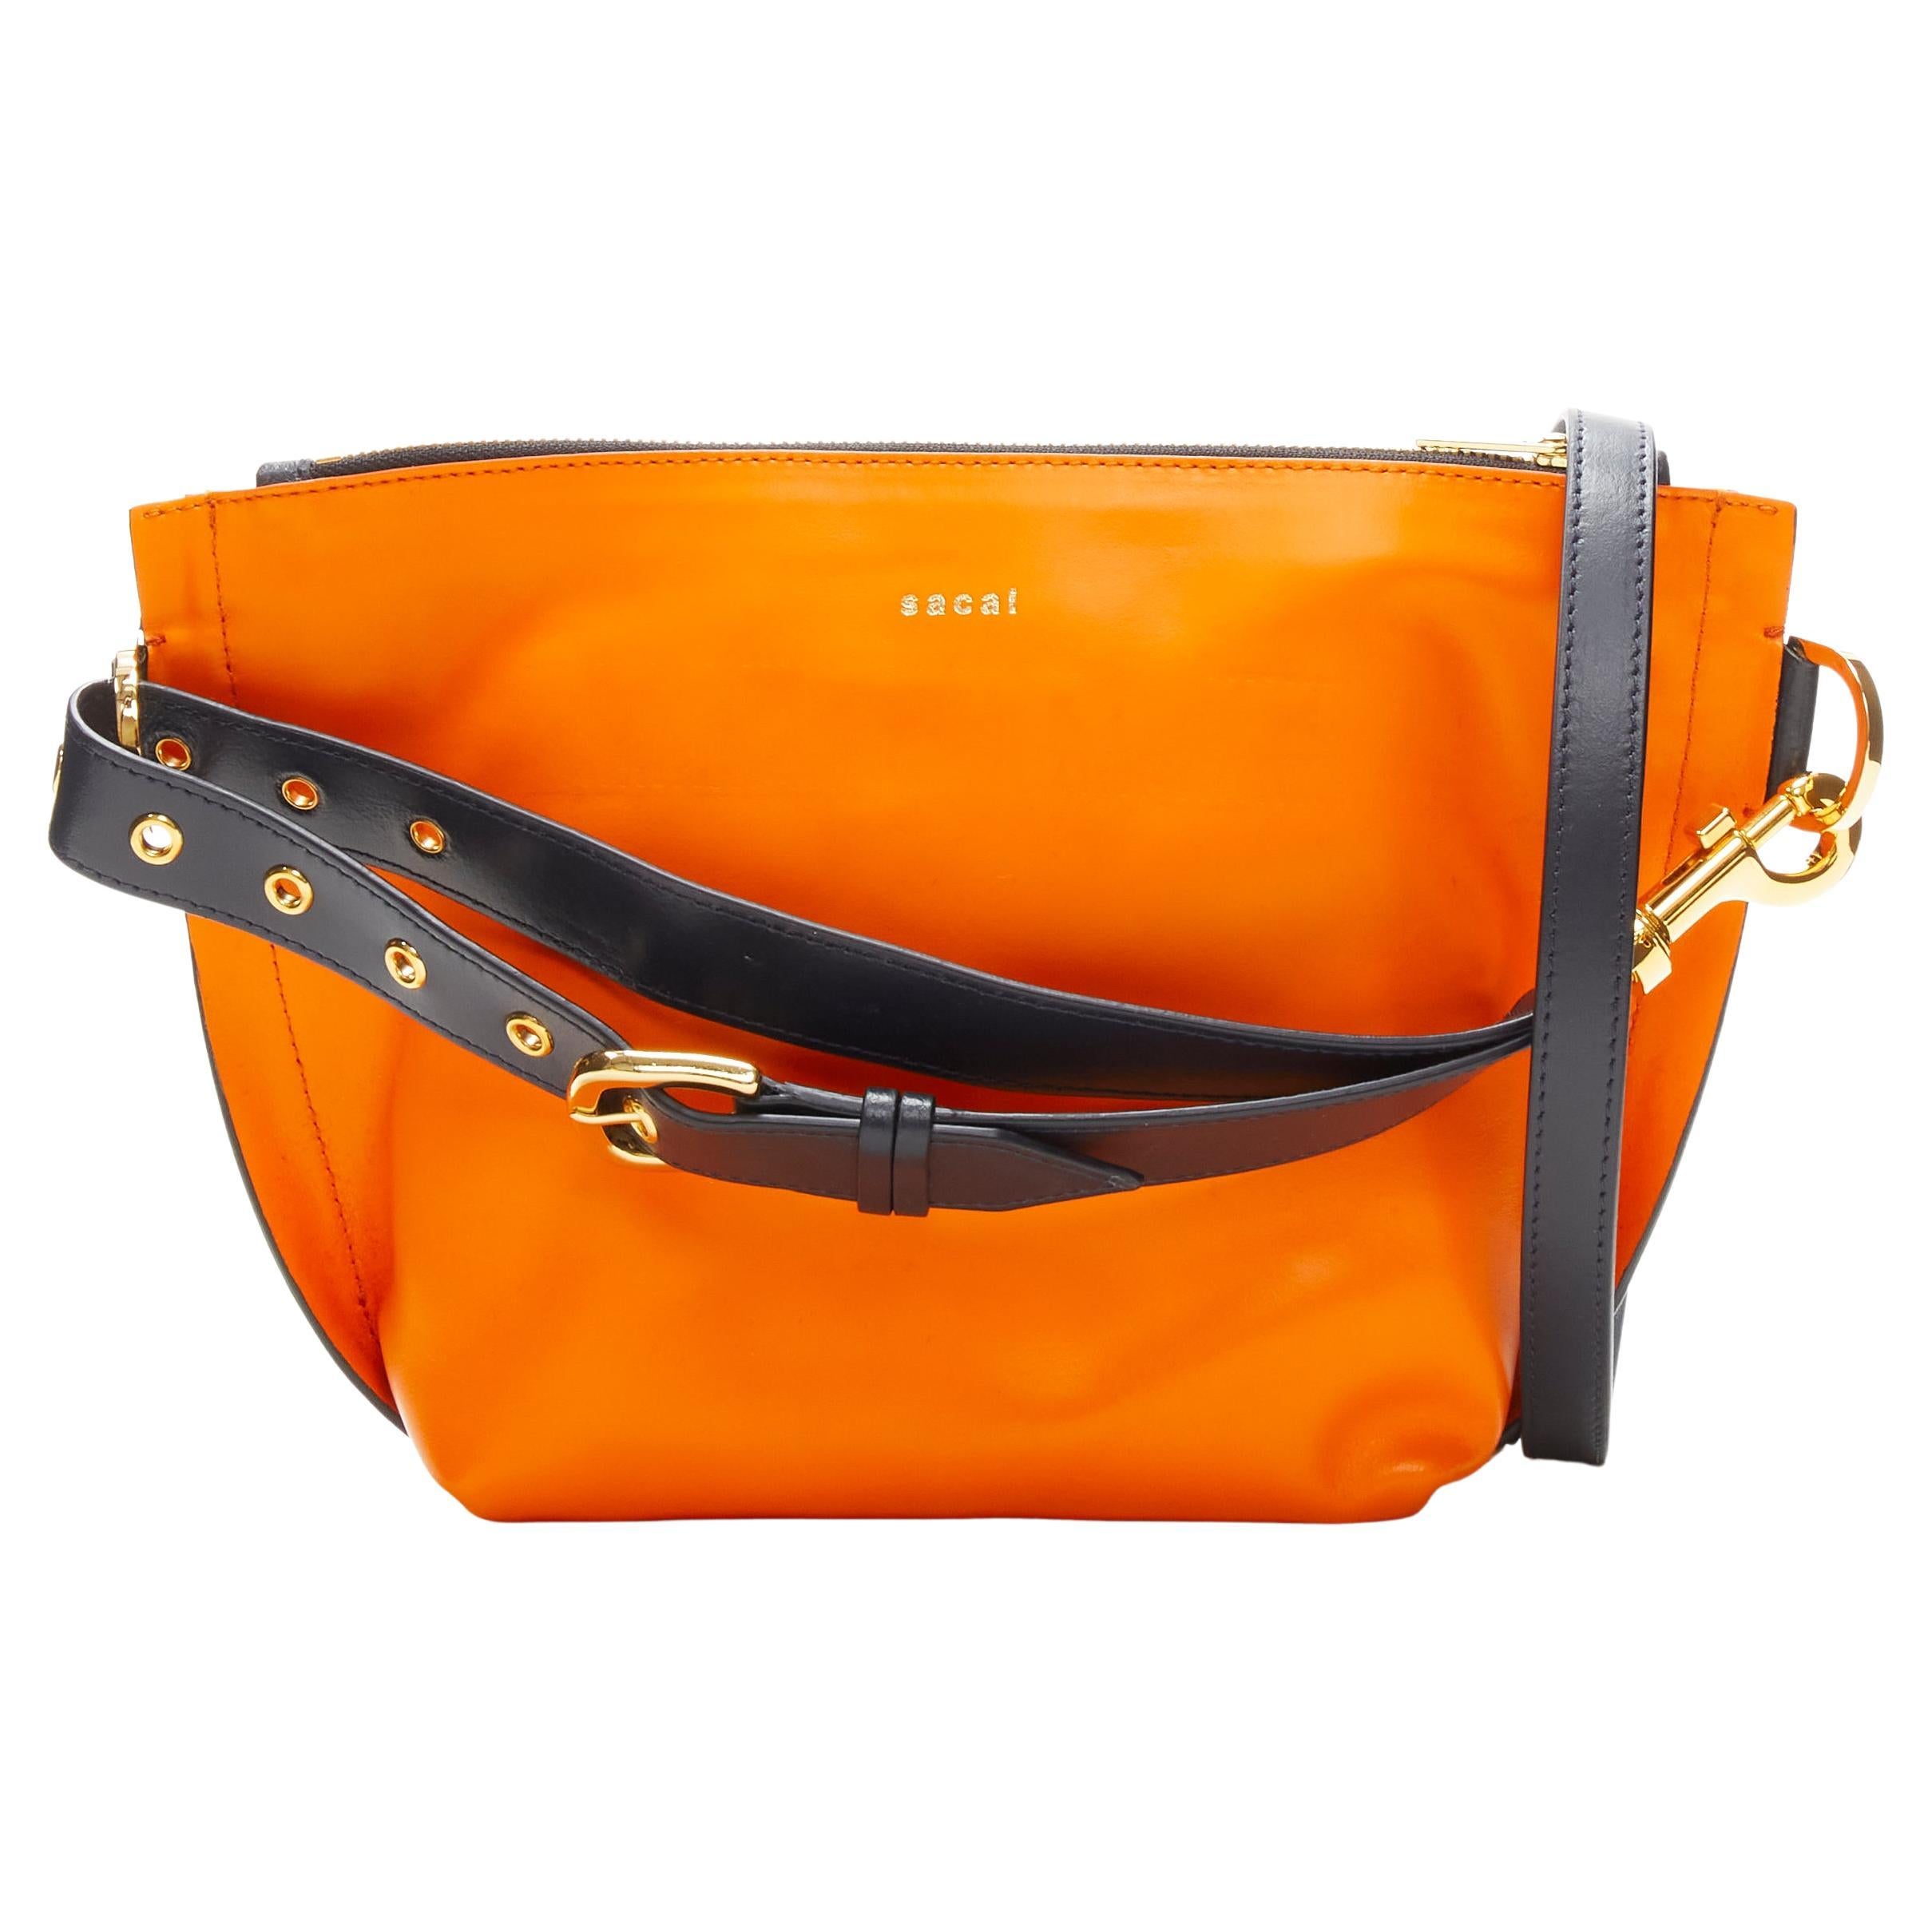 SACAI orangefarbene Crossbody-Tasche aus Leder mit marineblauem Gürtel und goldenem Logo